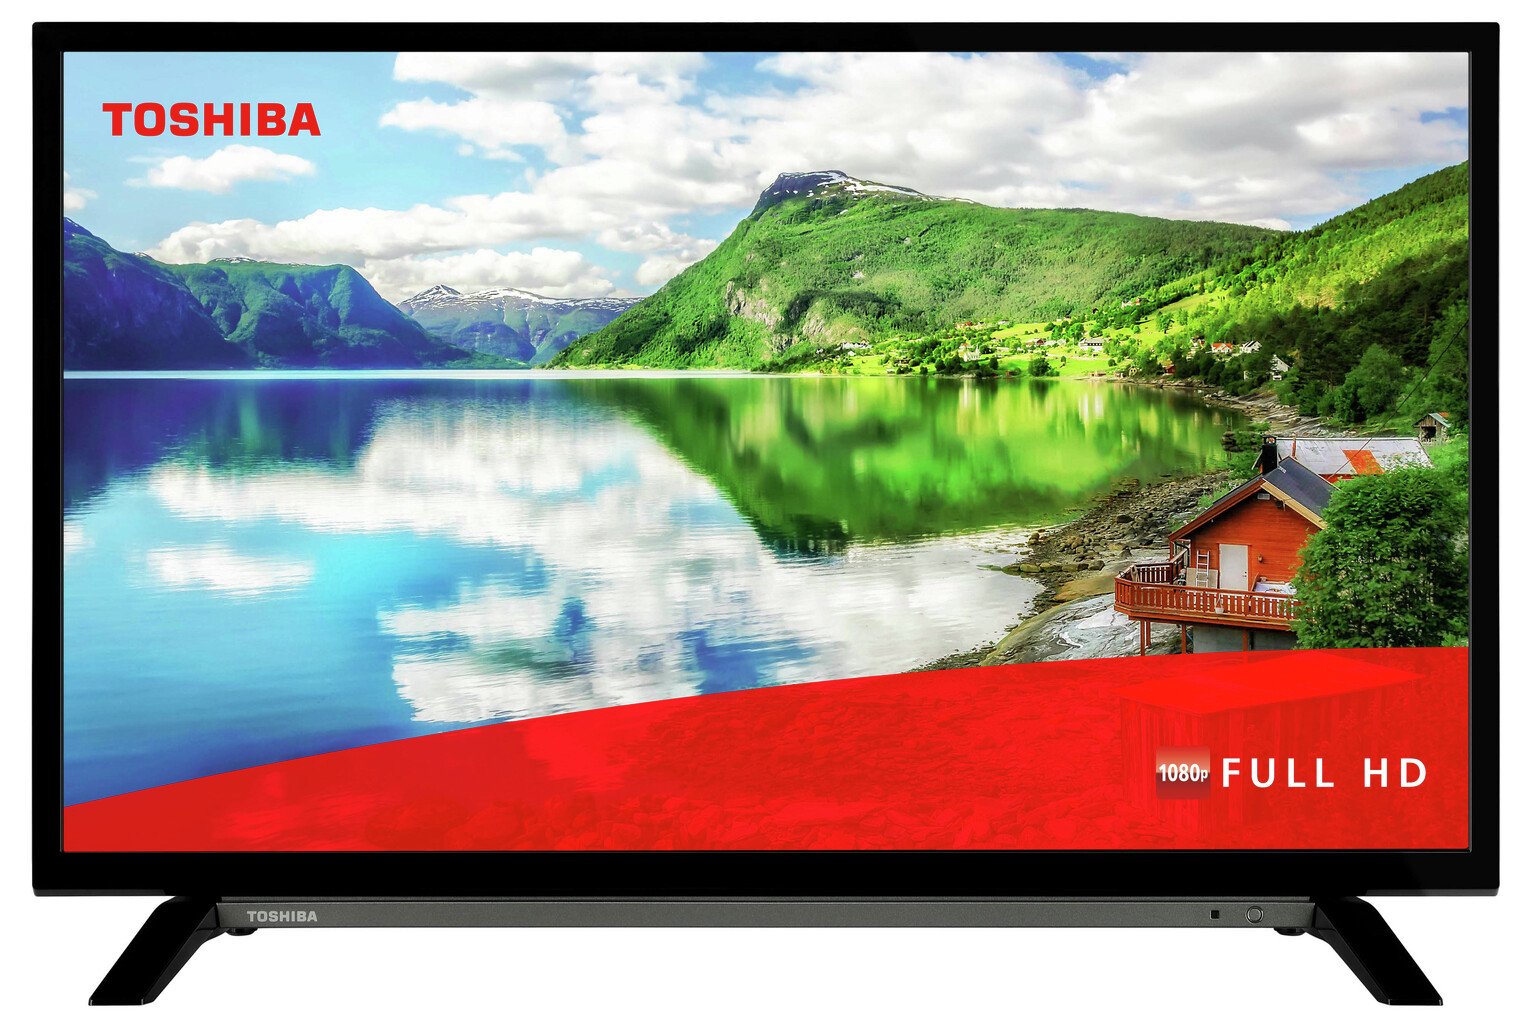 Недорогие телевизоры со смарт тв 32 дюйма. Телевизор 32 дюйма Тошиба смарт. Телевизор Toshiba 32 дюйма. Toshiba 32l5069 led, HDR.